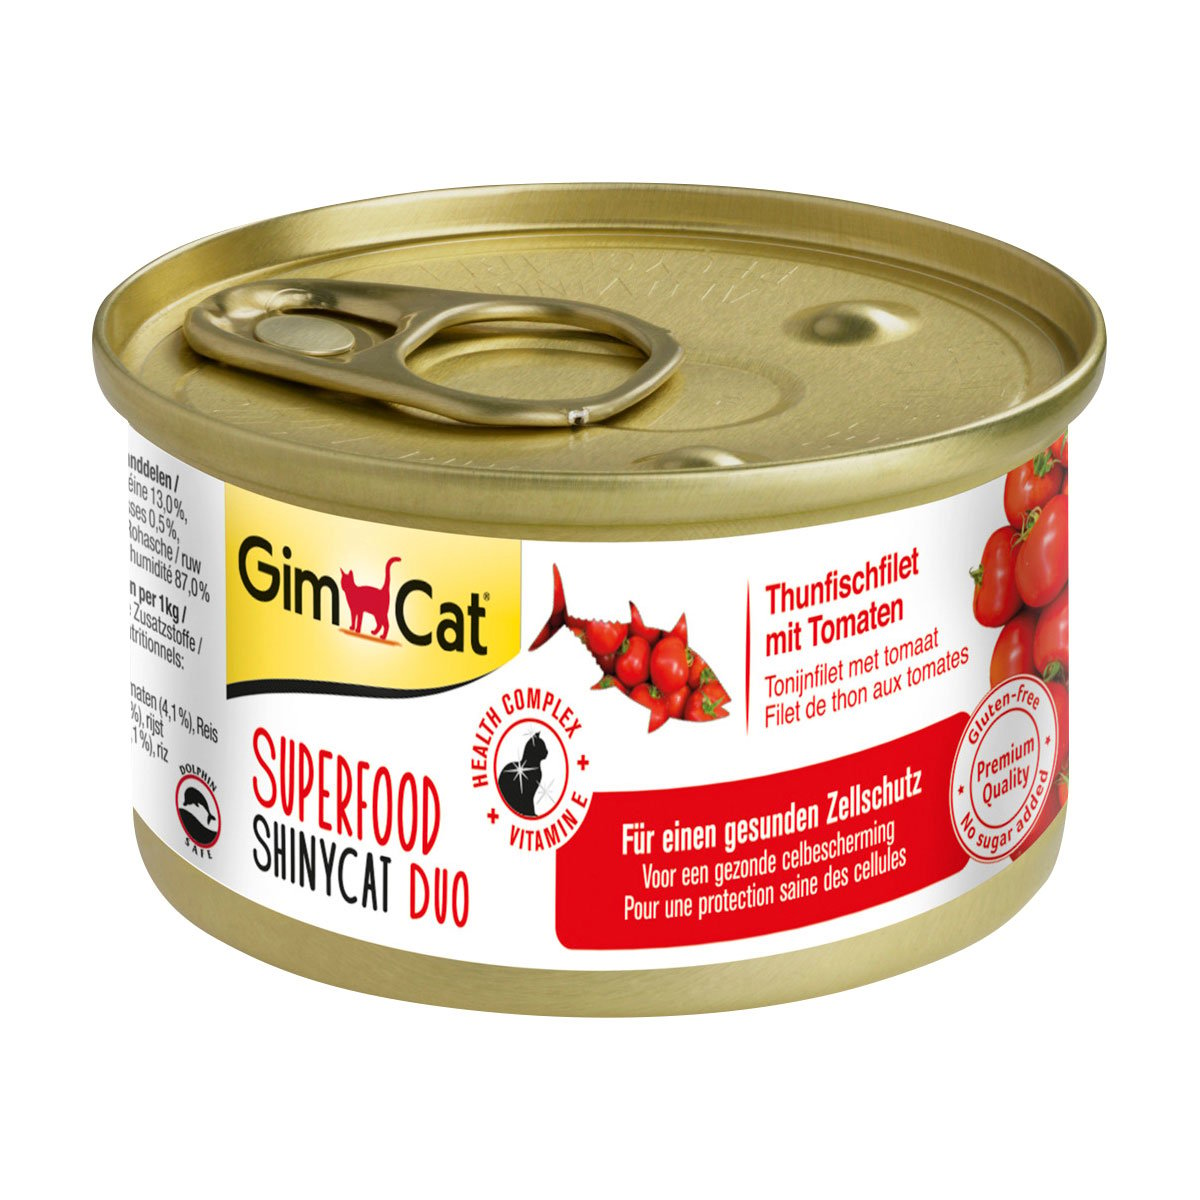 GimCat Superfood ShinyCat Duo Thunfischfilet mit Tomaten 24x70g von Gimcat